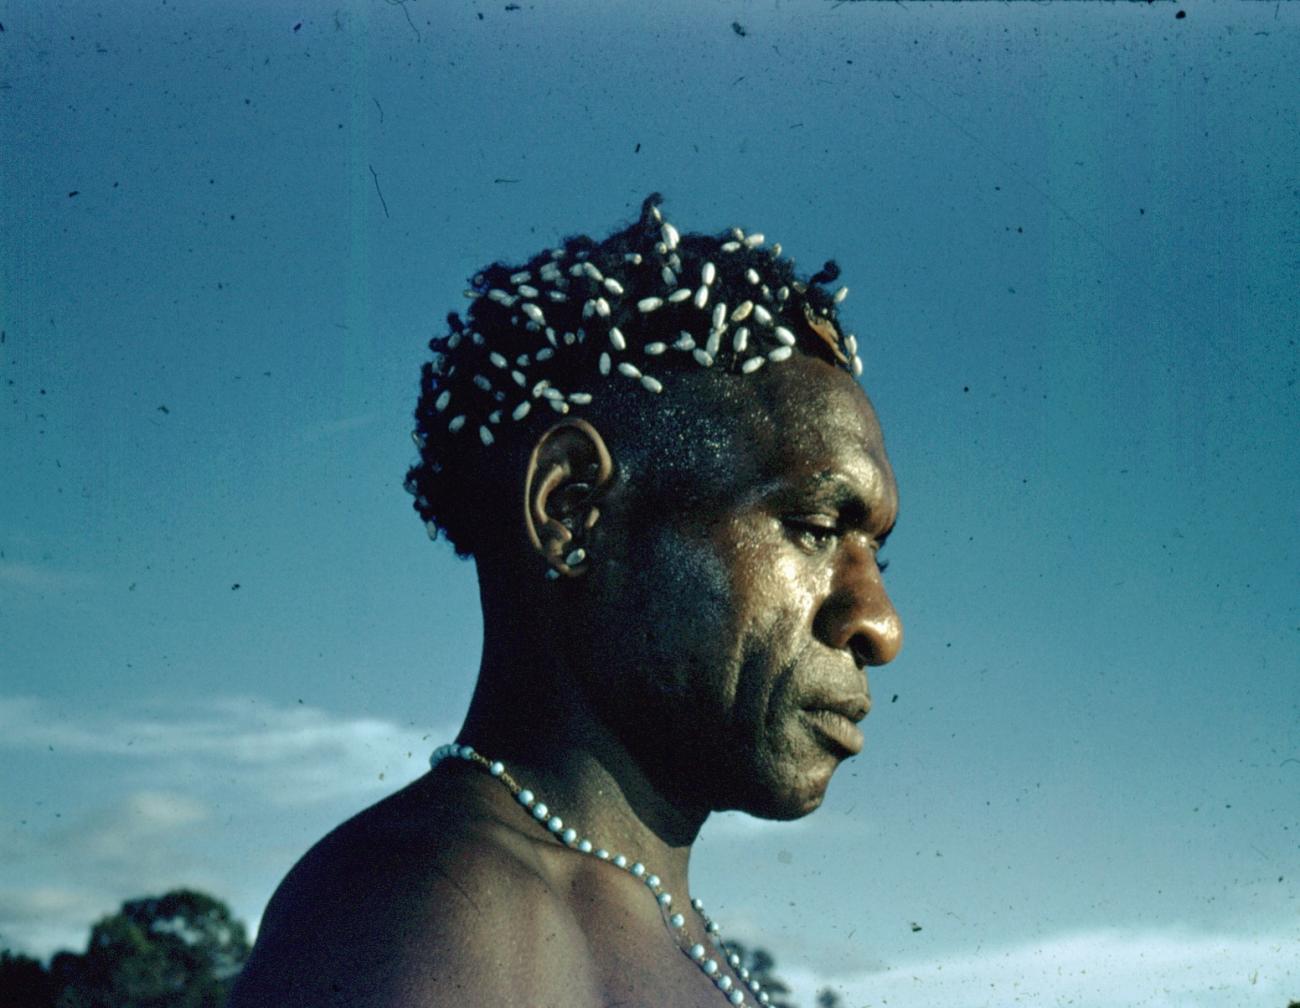 BD/66/90 - 
Portret van man met haarversiering van graszaden (Jobstranen)
